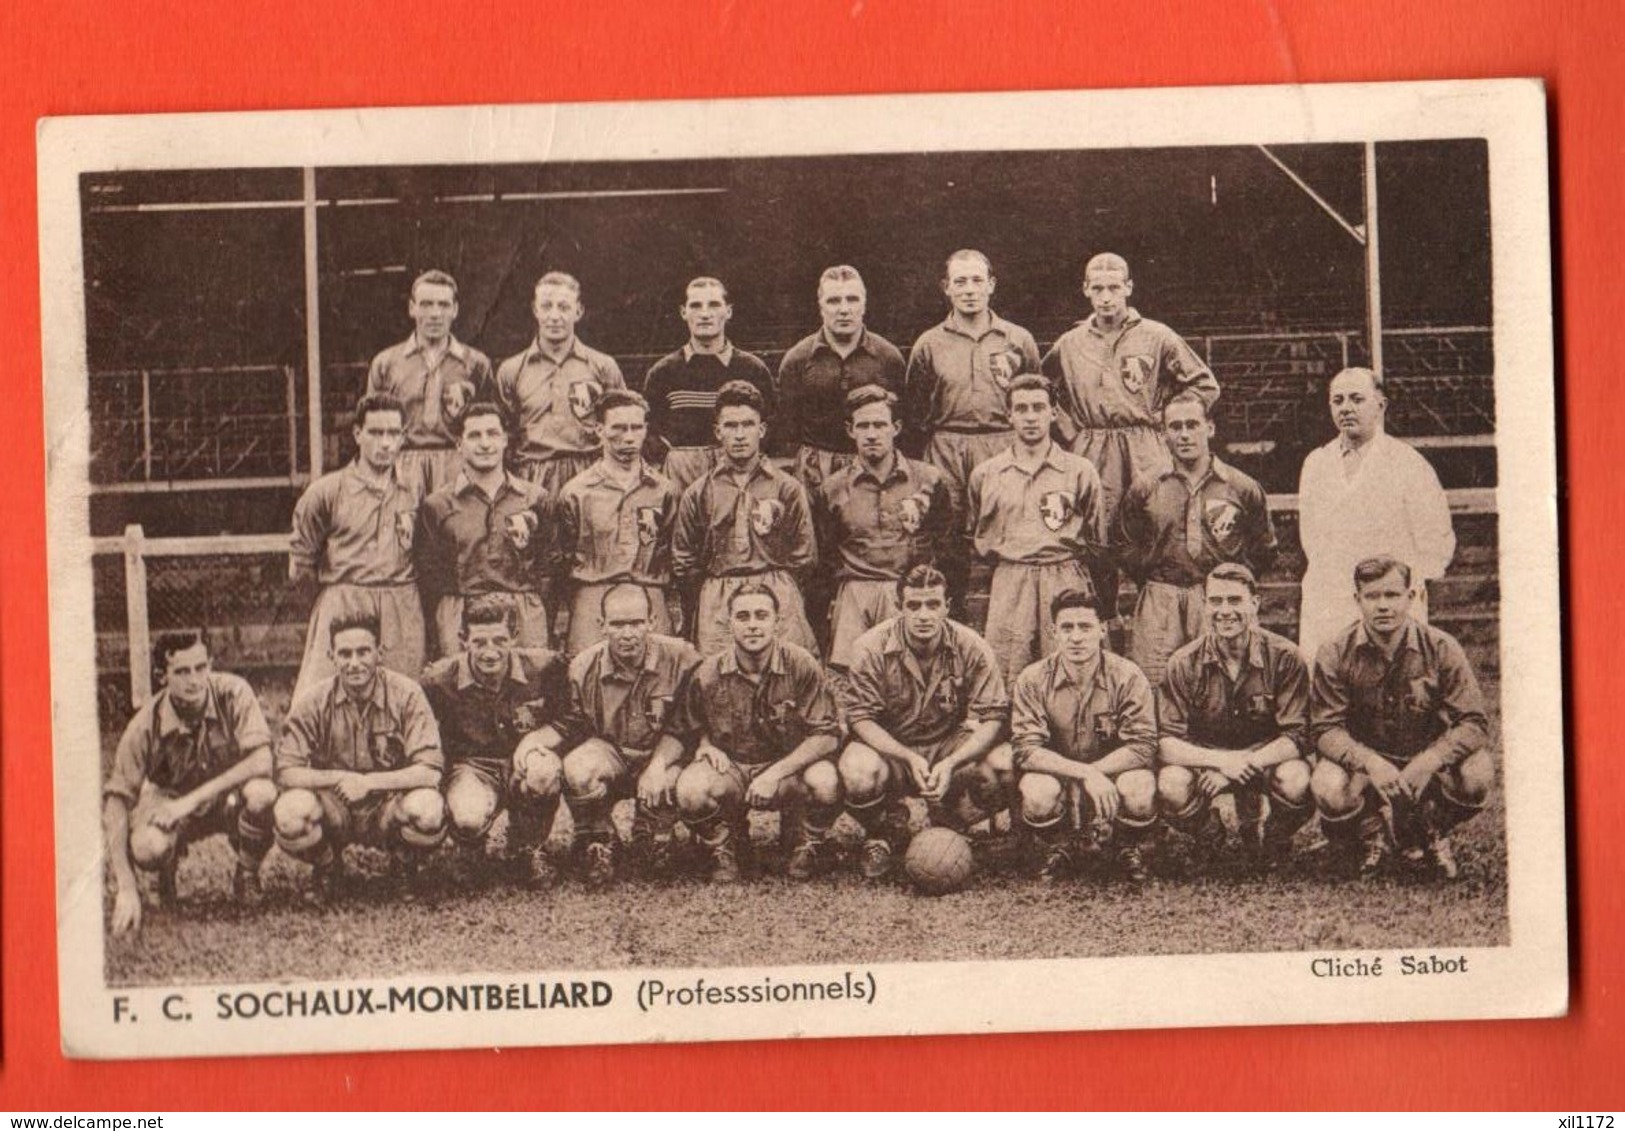 KAJ-03  Football-Club Sochaux-Montbéliard Carte-photo De L'équipe 1935-1936 Aavec Au Dos Le Calendrier Des Matchs. - Sochaux